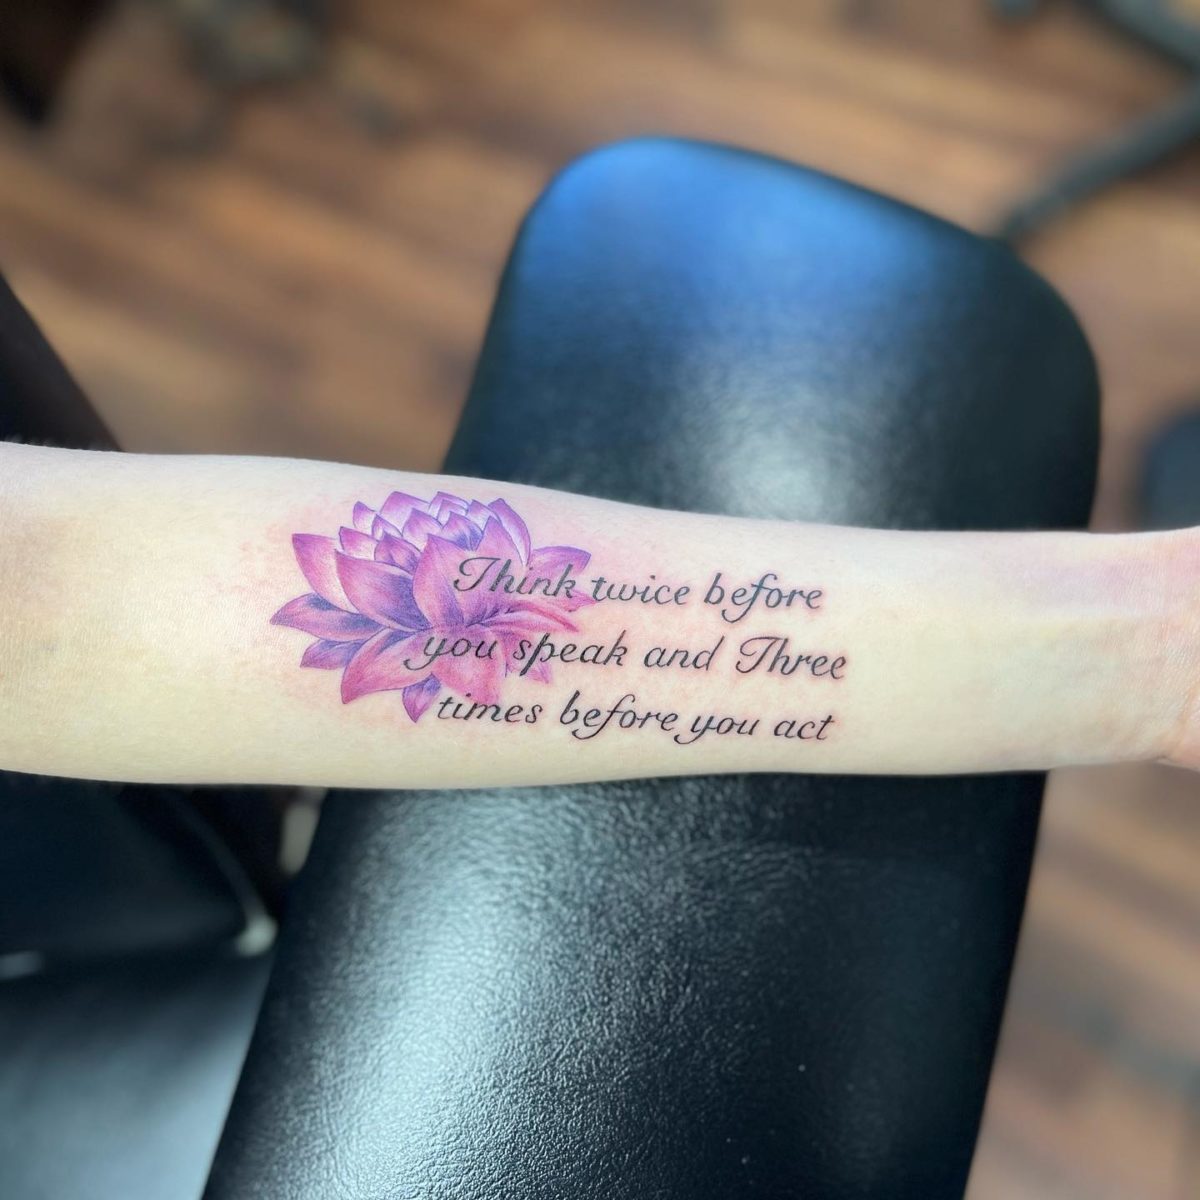 33 Lotus Flower Tattoo Ideas